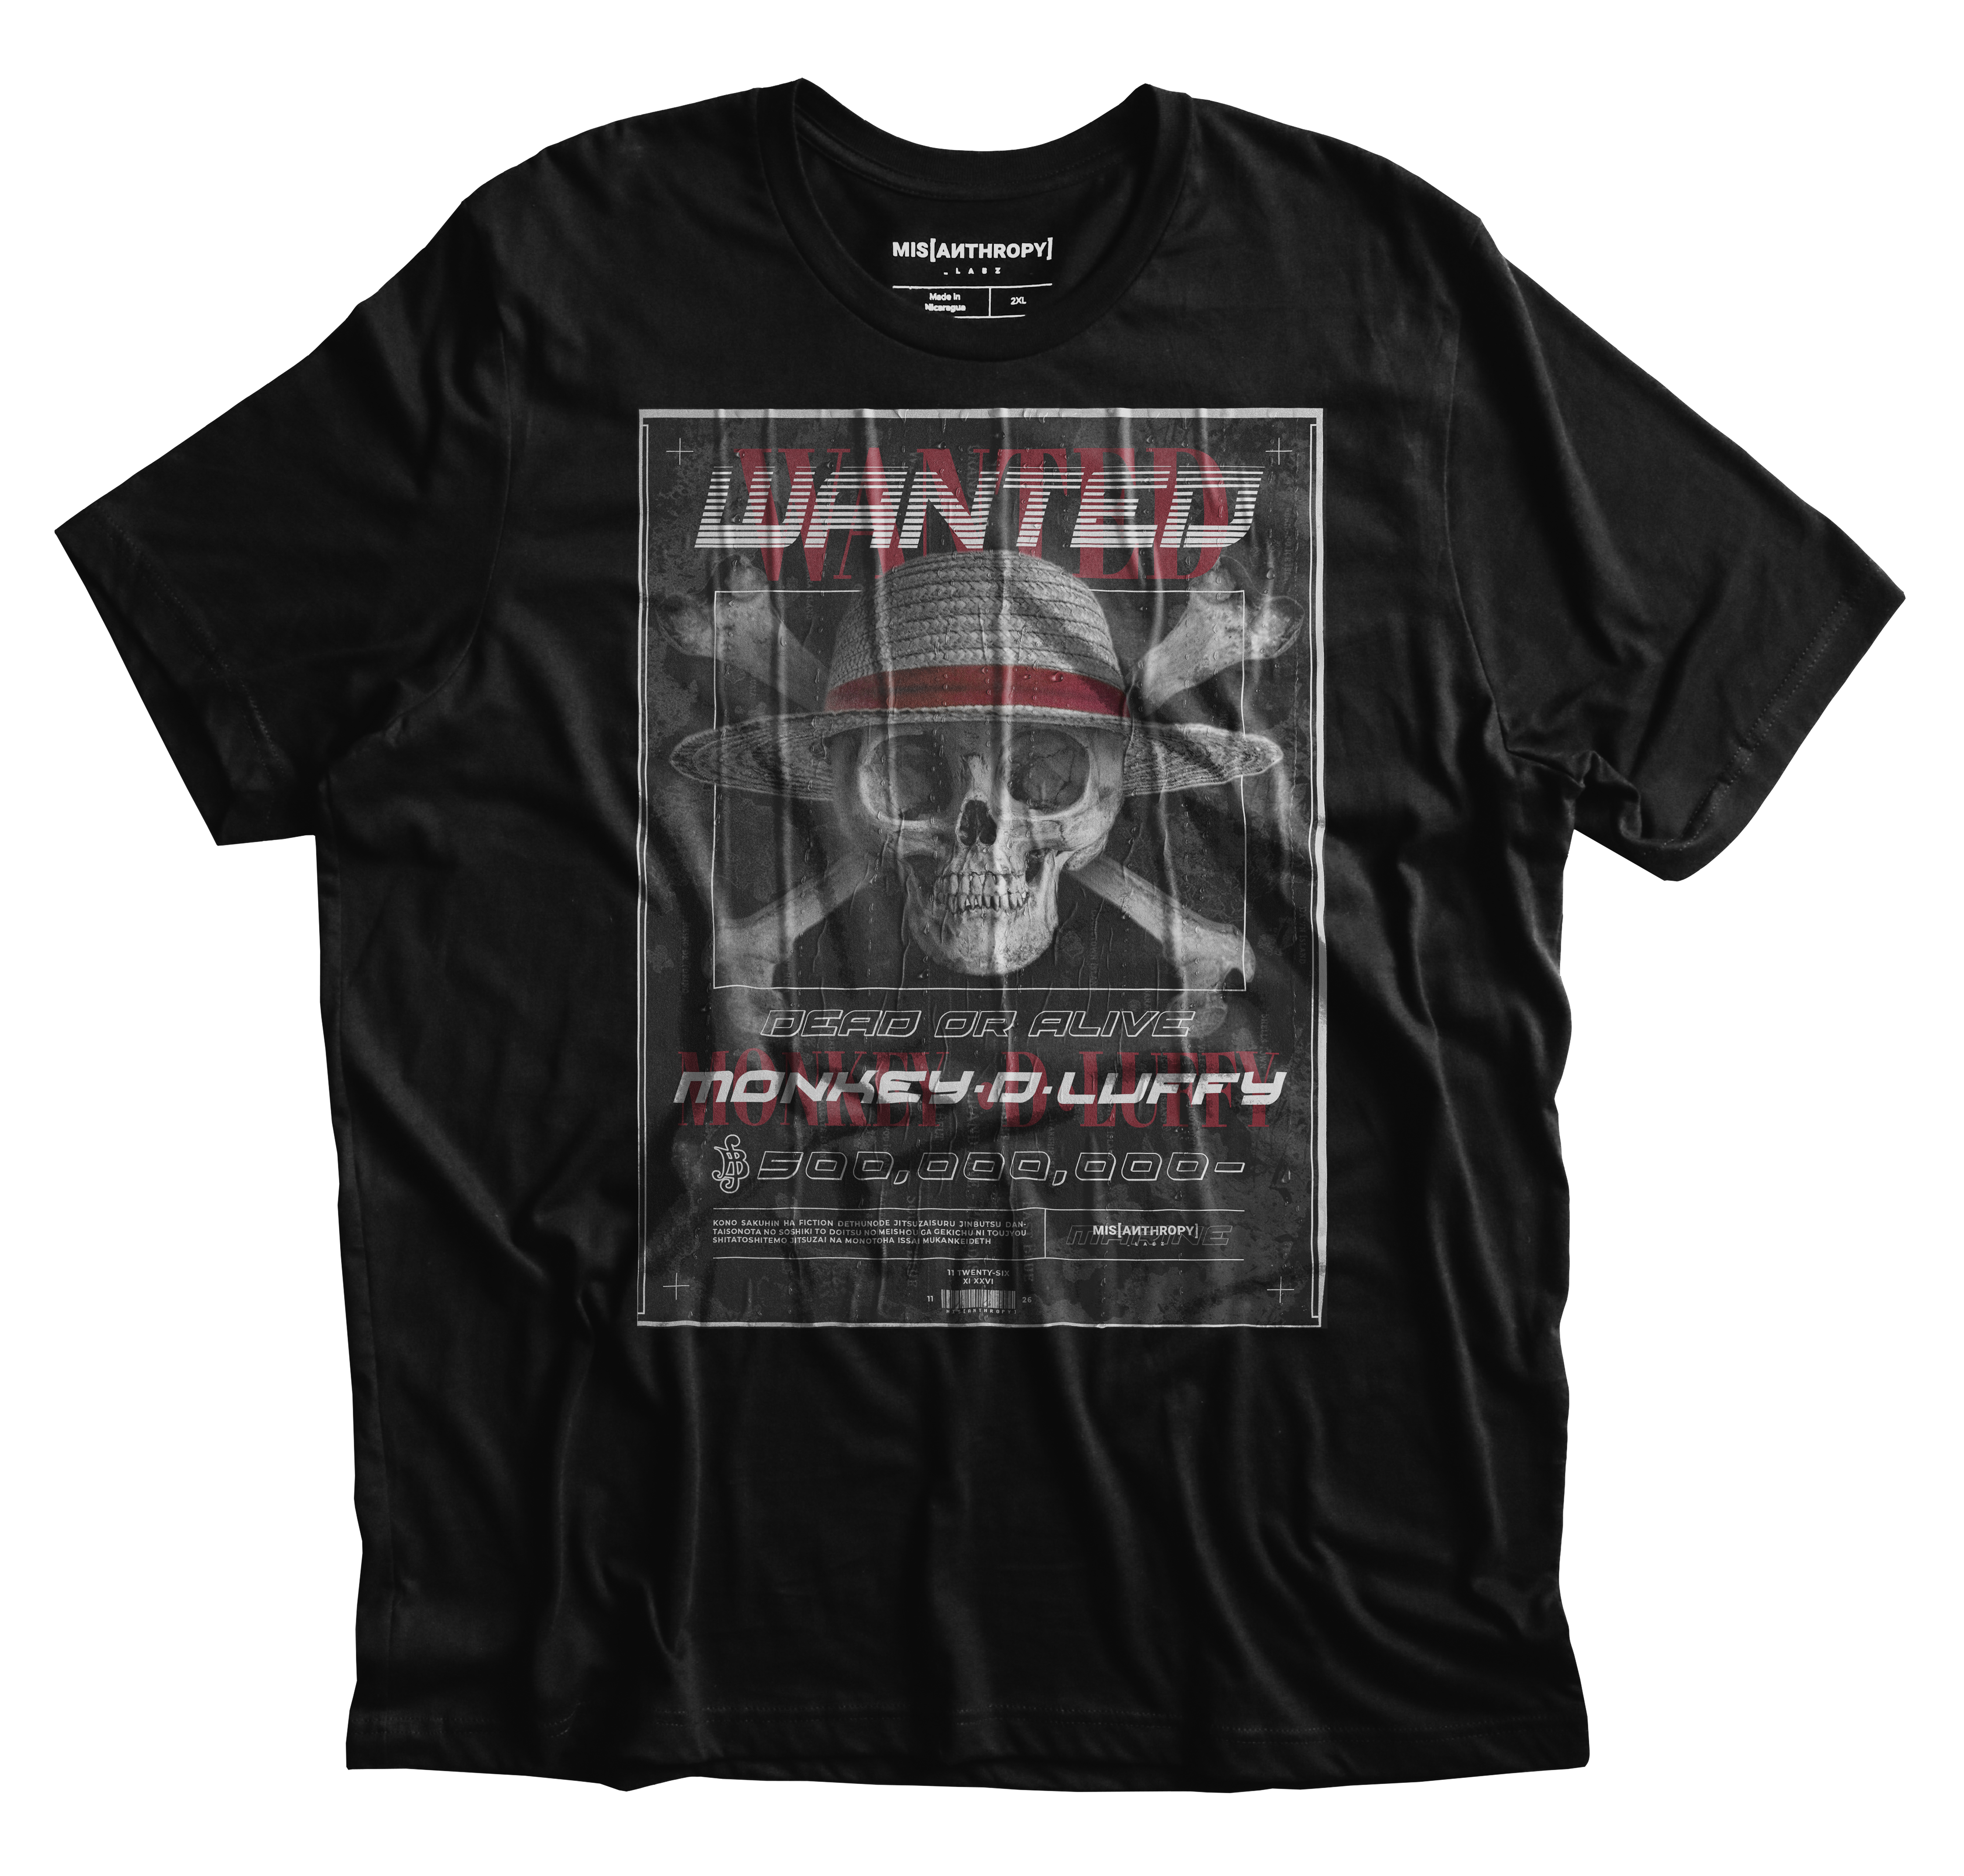 OP Wanted T-Shirt